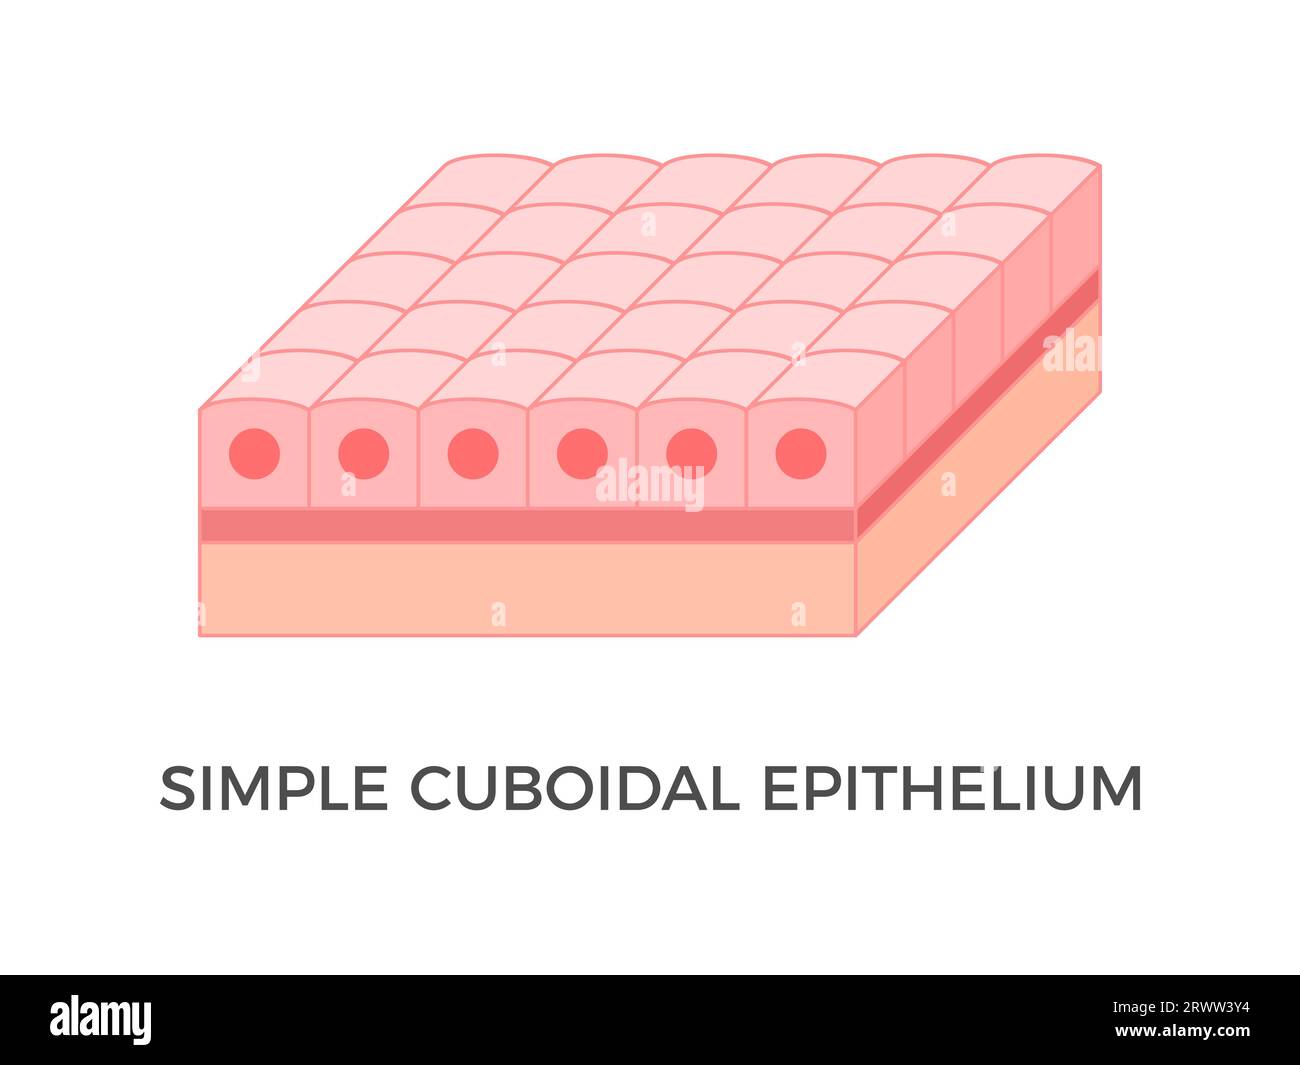 Einfaches kuboidales Epithel. Epitheliale Gewebetypen. Eine einzelne Schicht würfelähnlicher Zellen, die Schutz bieten und aktiv oder passiv sein können. Vektor Stock Vektor